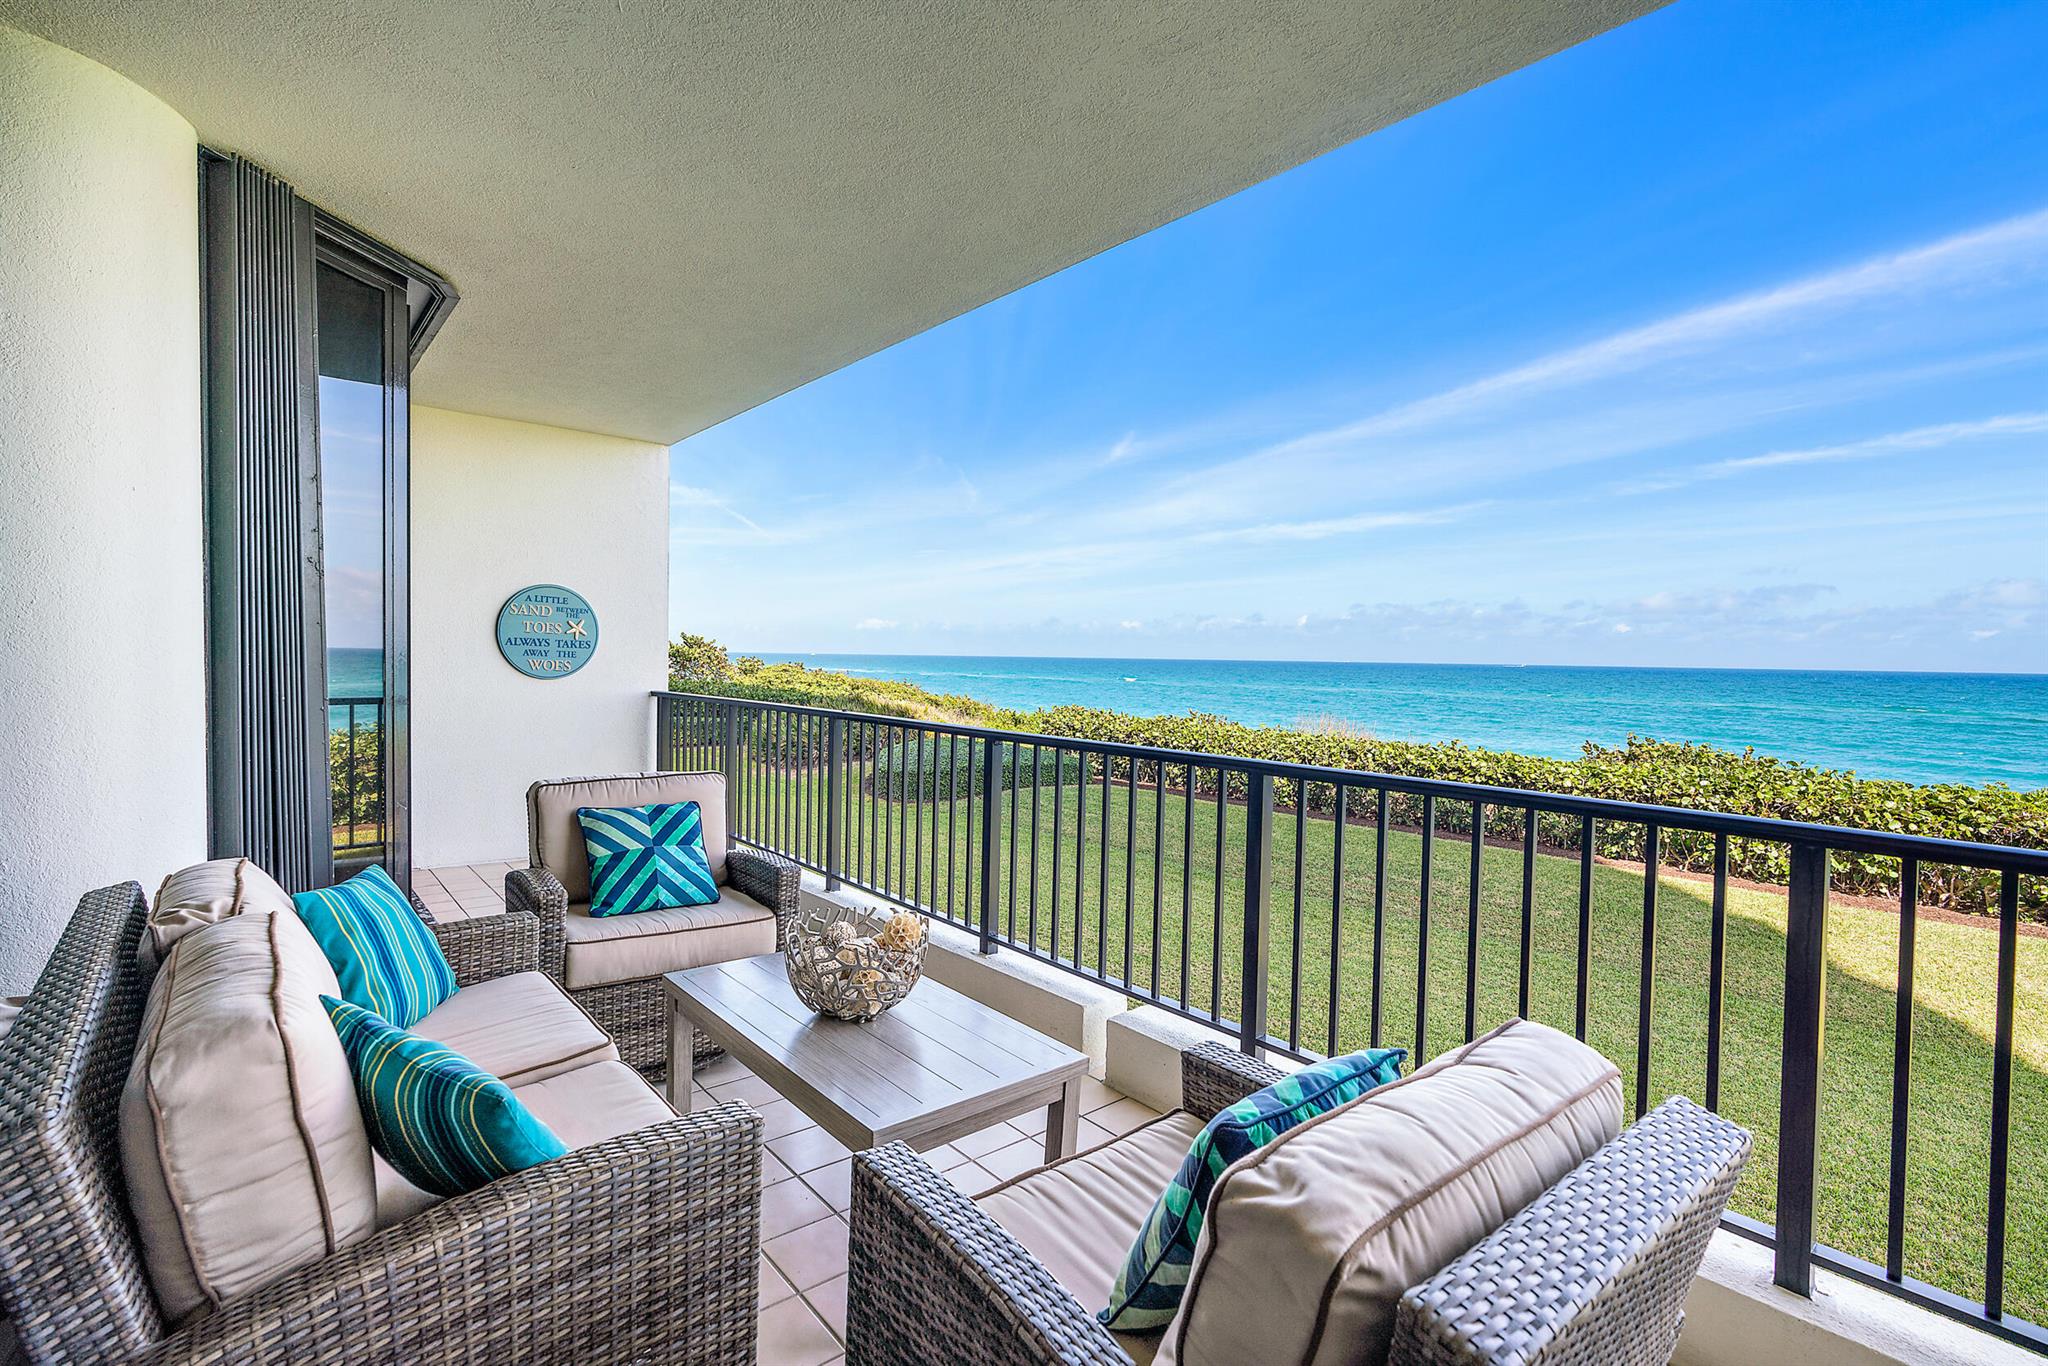 Condo for Rent in Juno Beach, FL